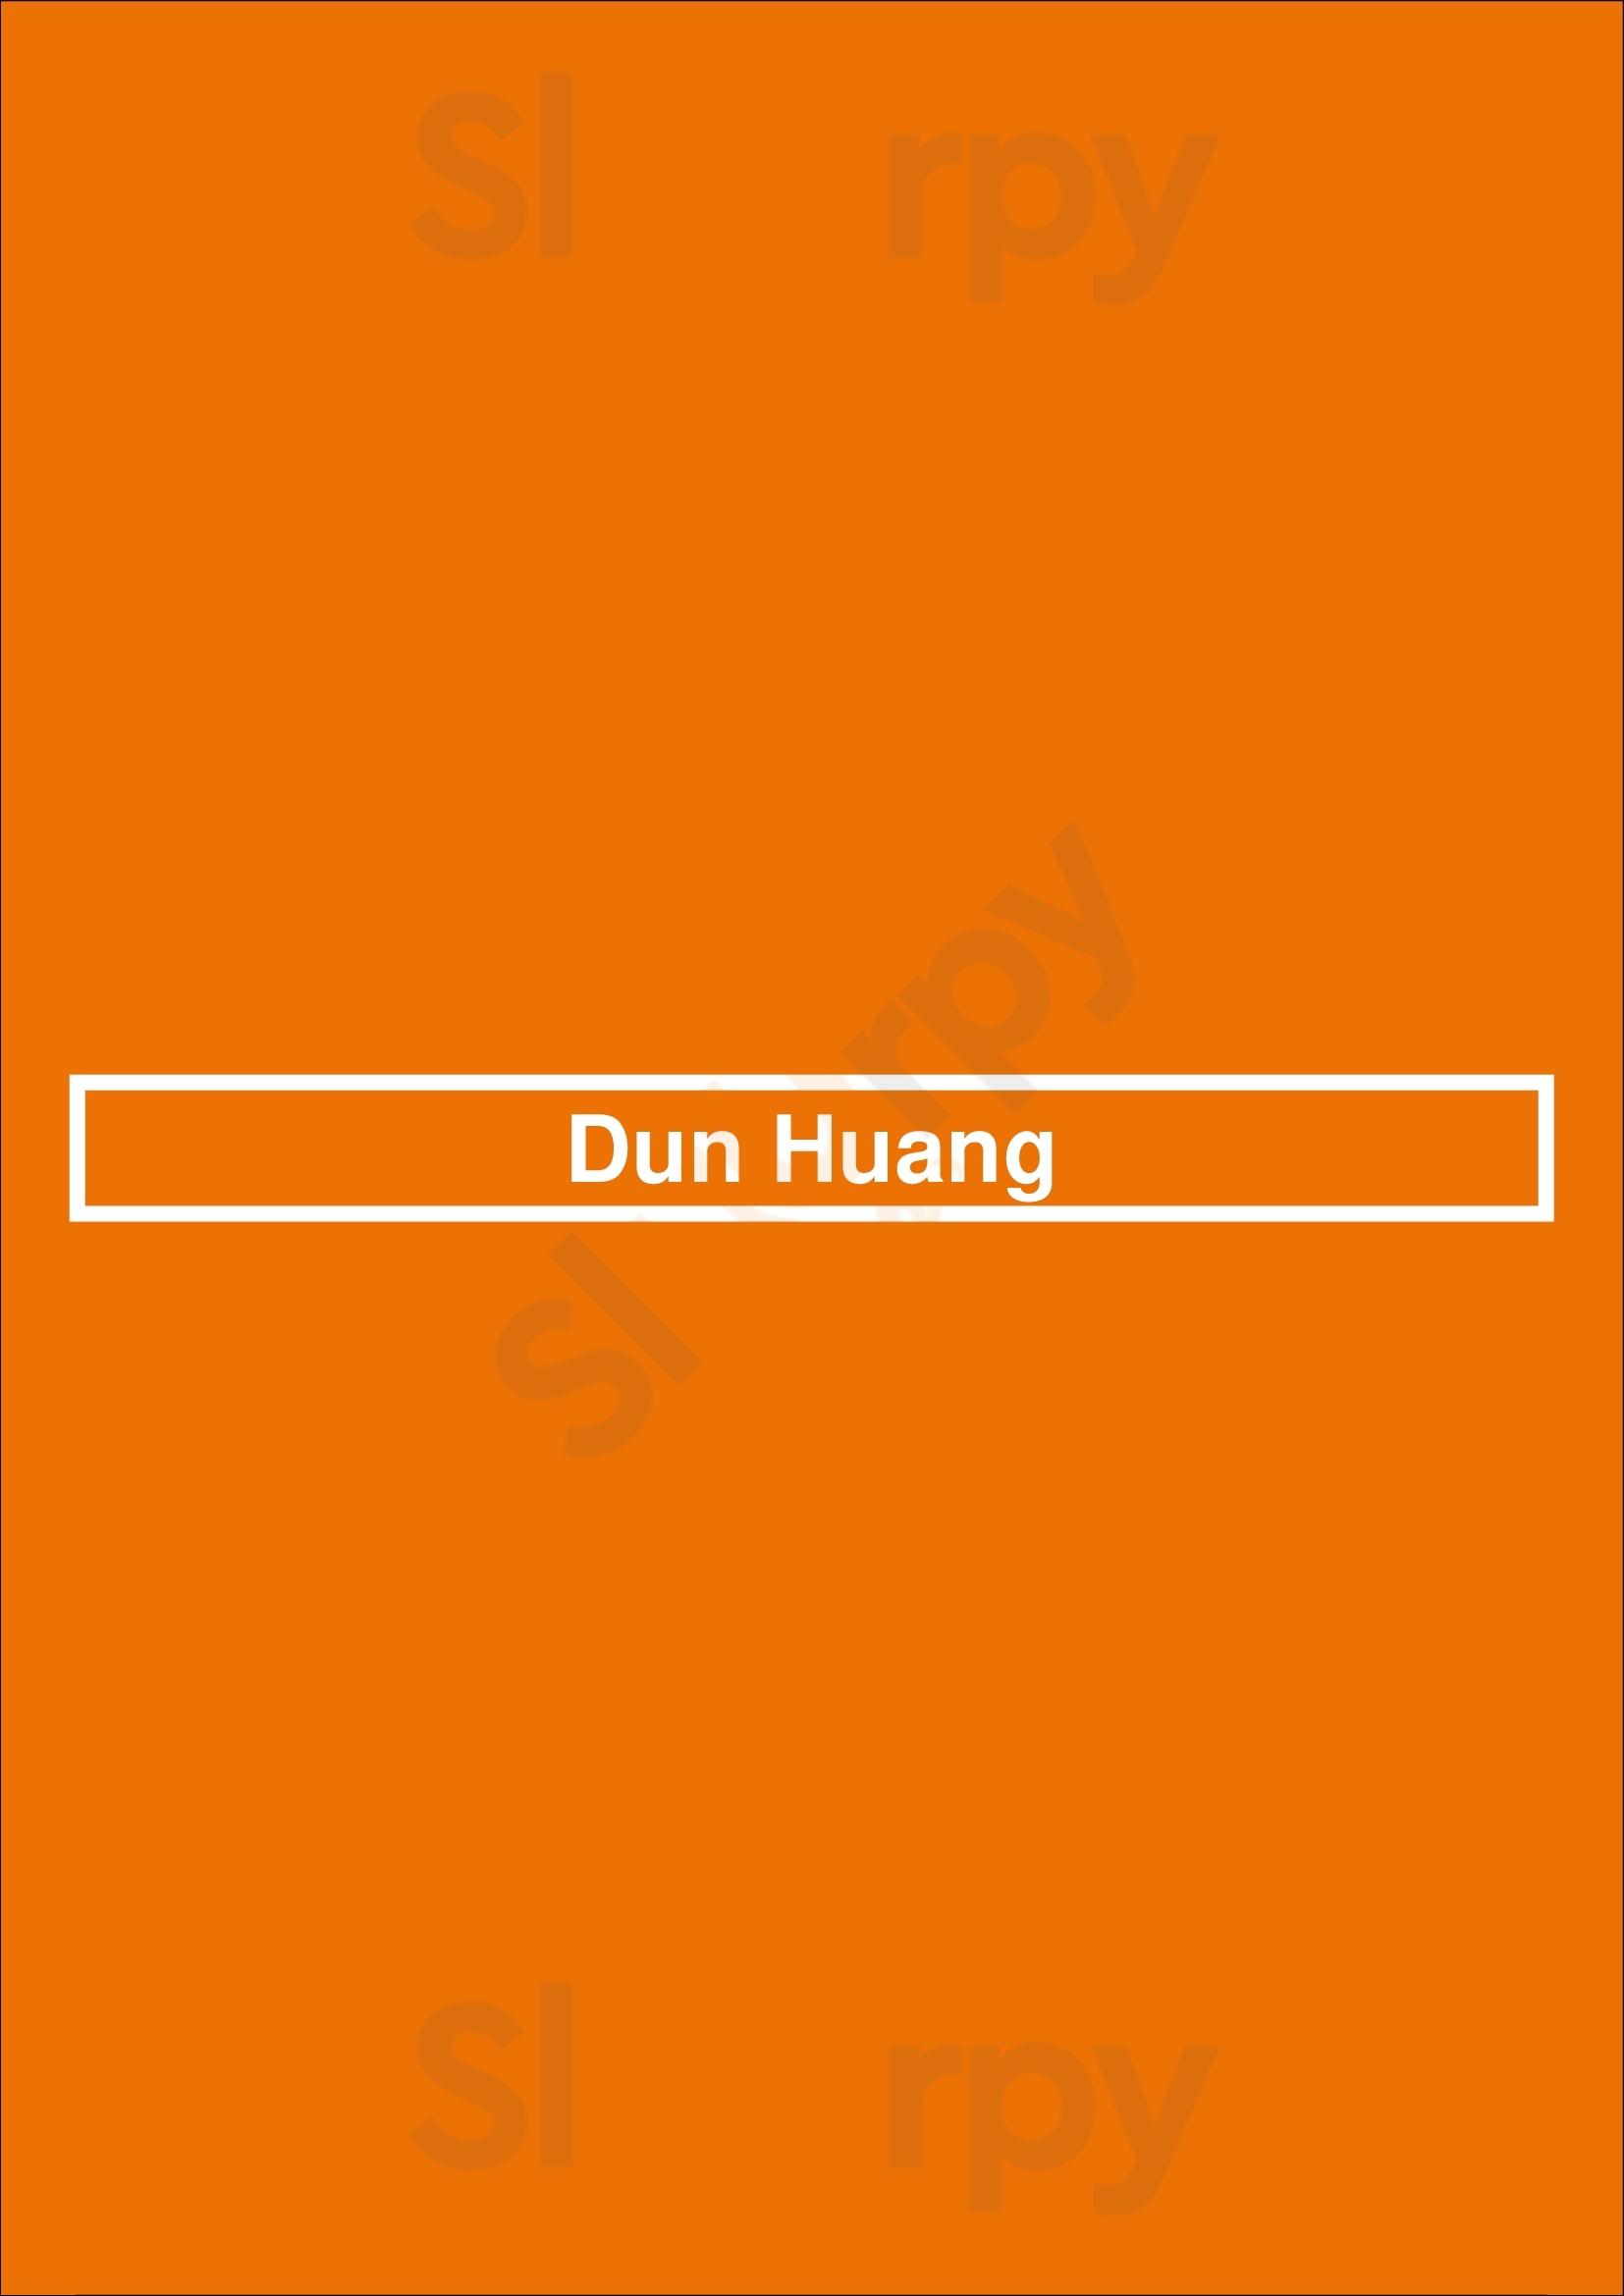 Dun Huang New York City Menu - 1